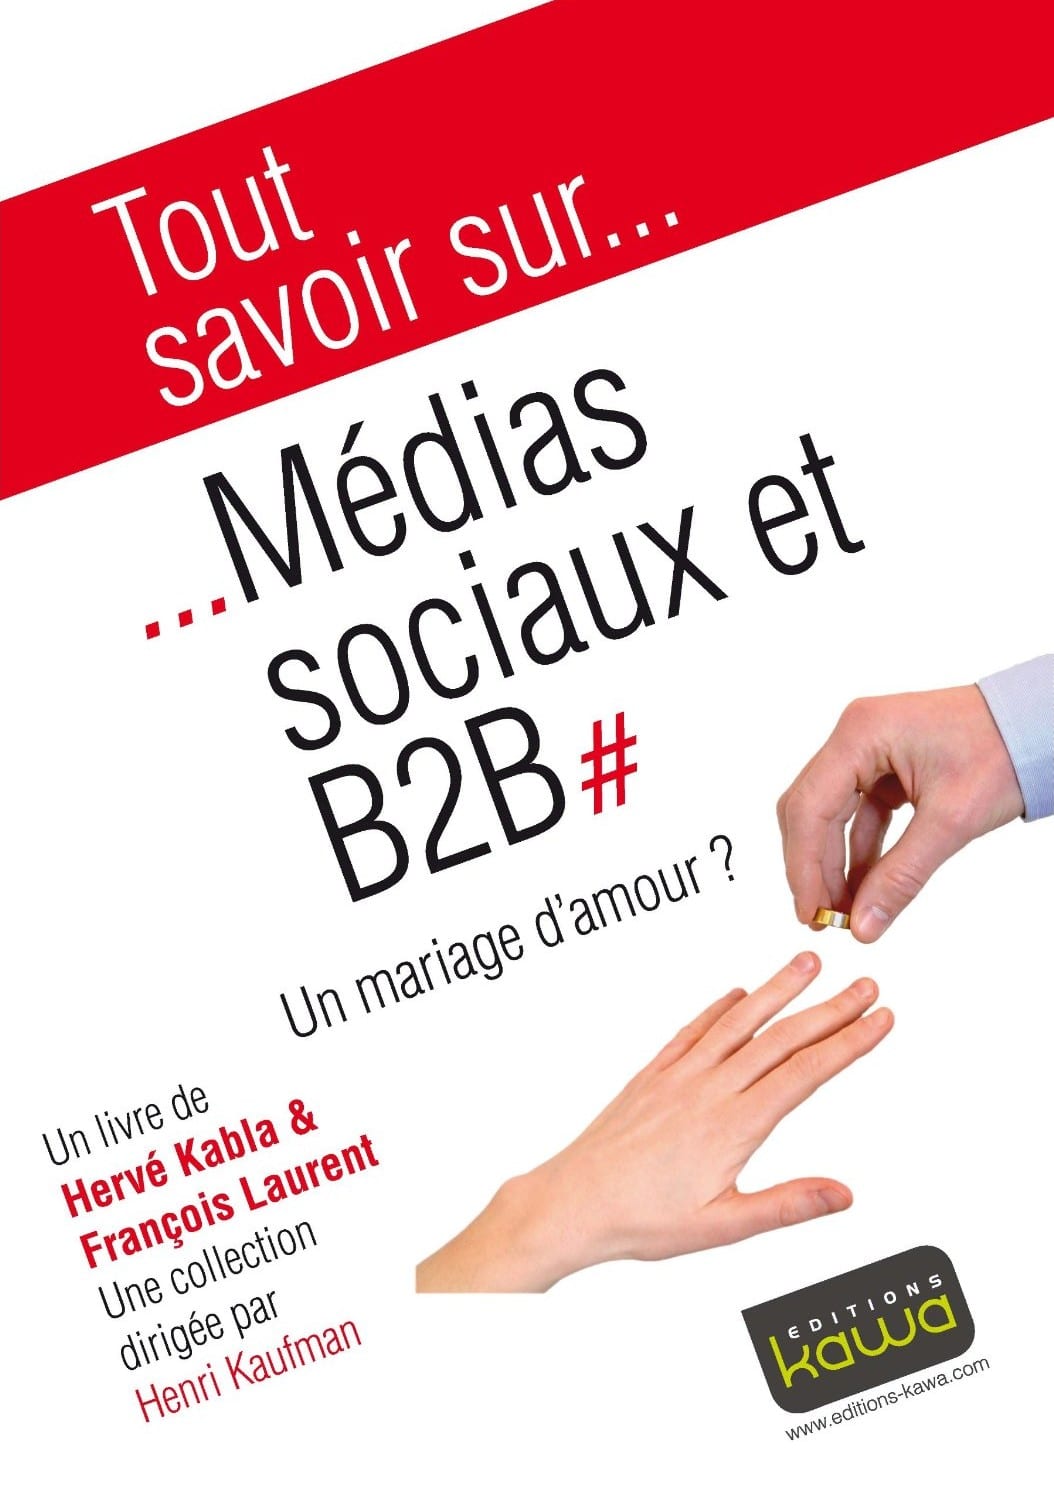 Media Sociaux et B2B, un mariage d'amour ? - Emilie Ogez, Hervé Kabla et Franck Rosenthal 6